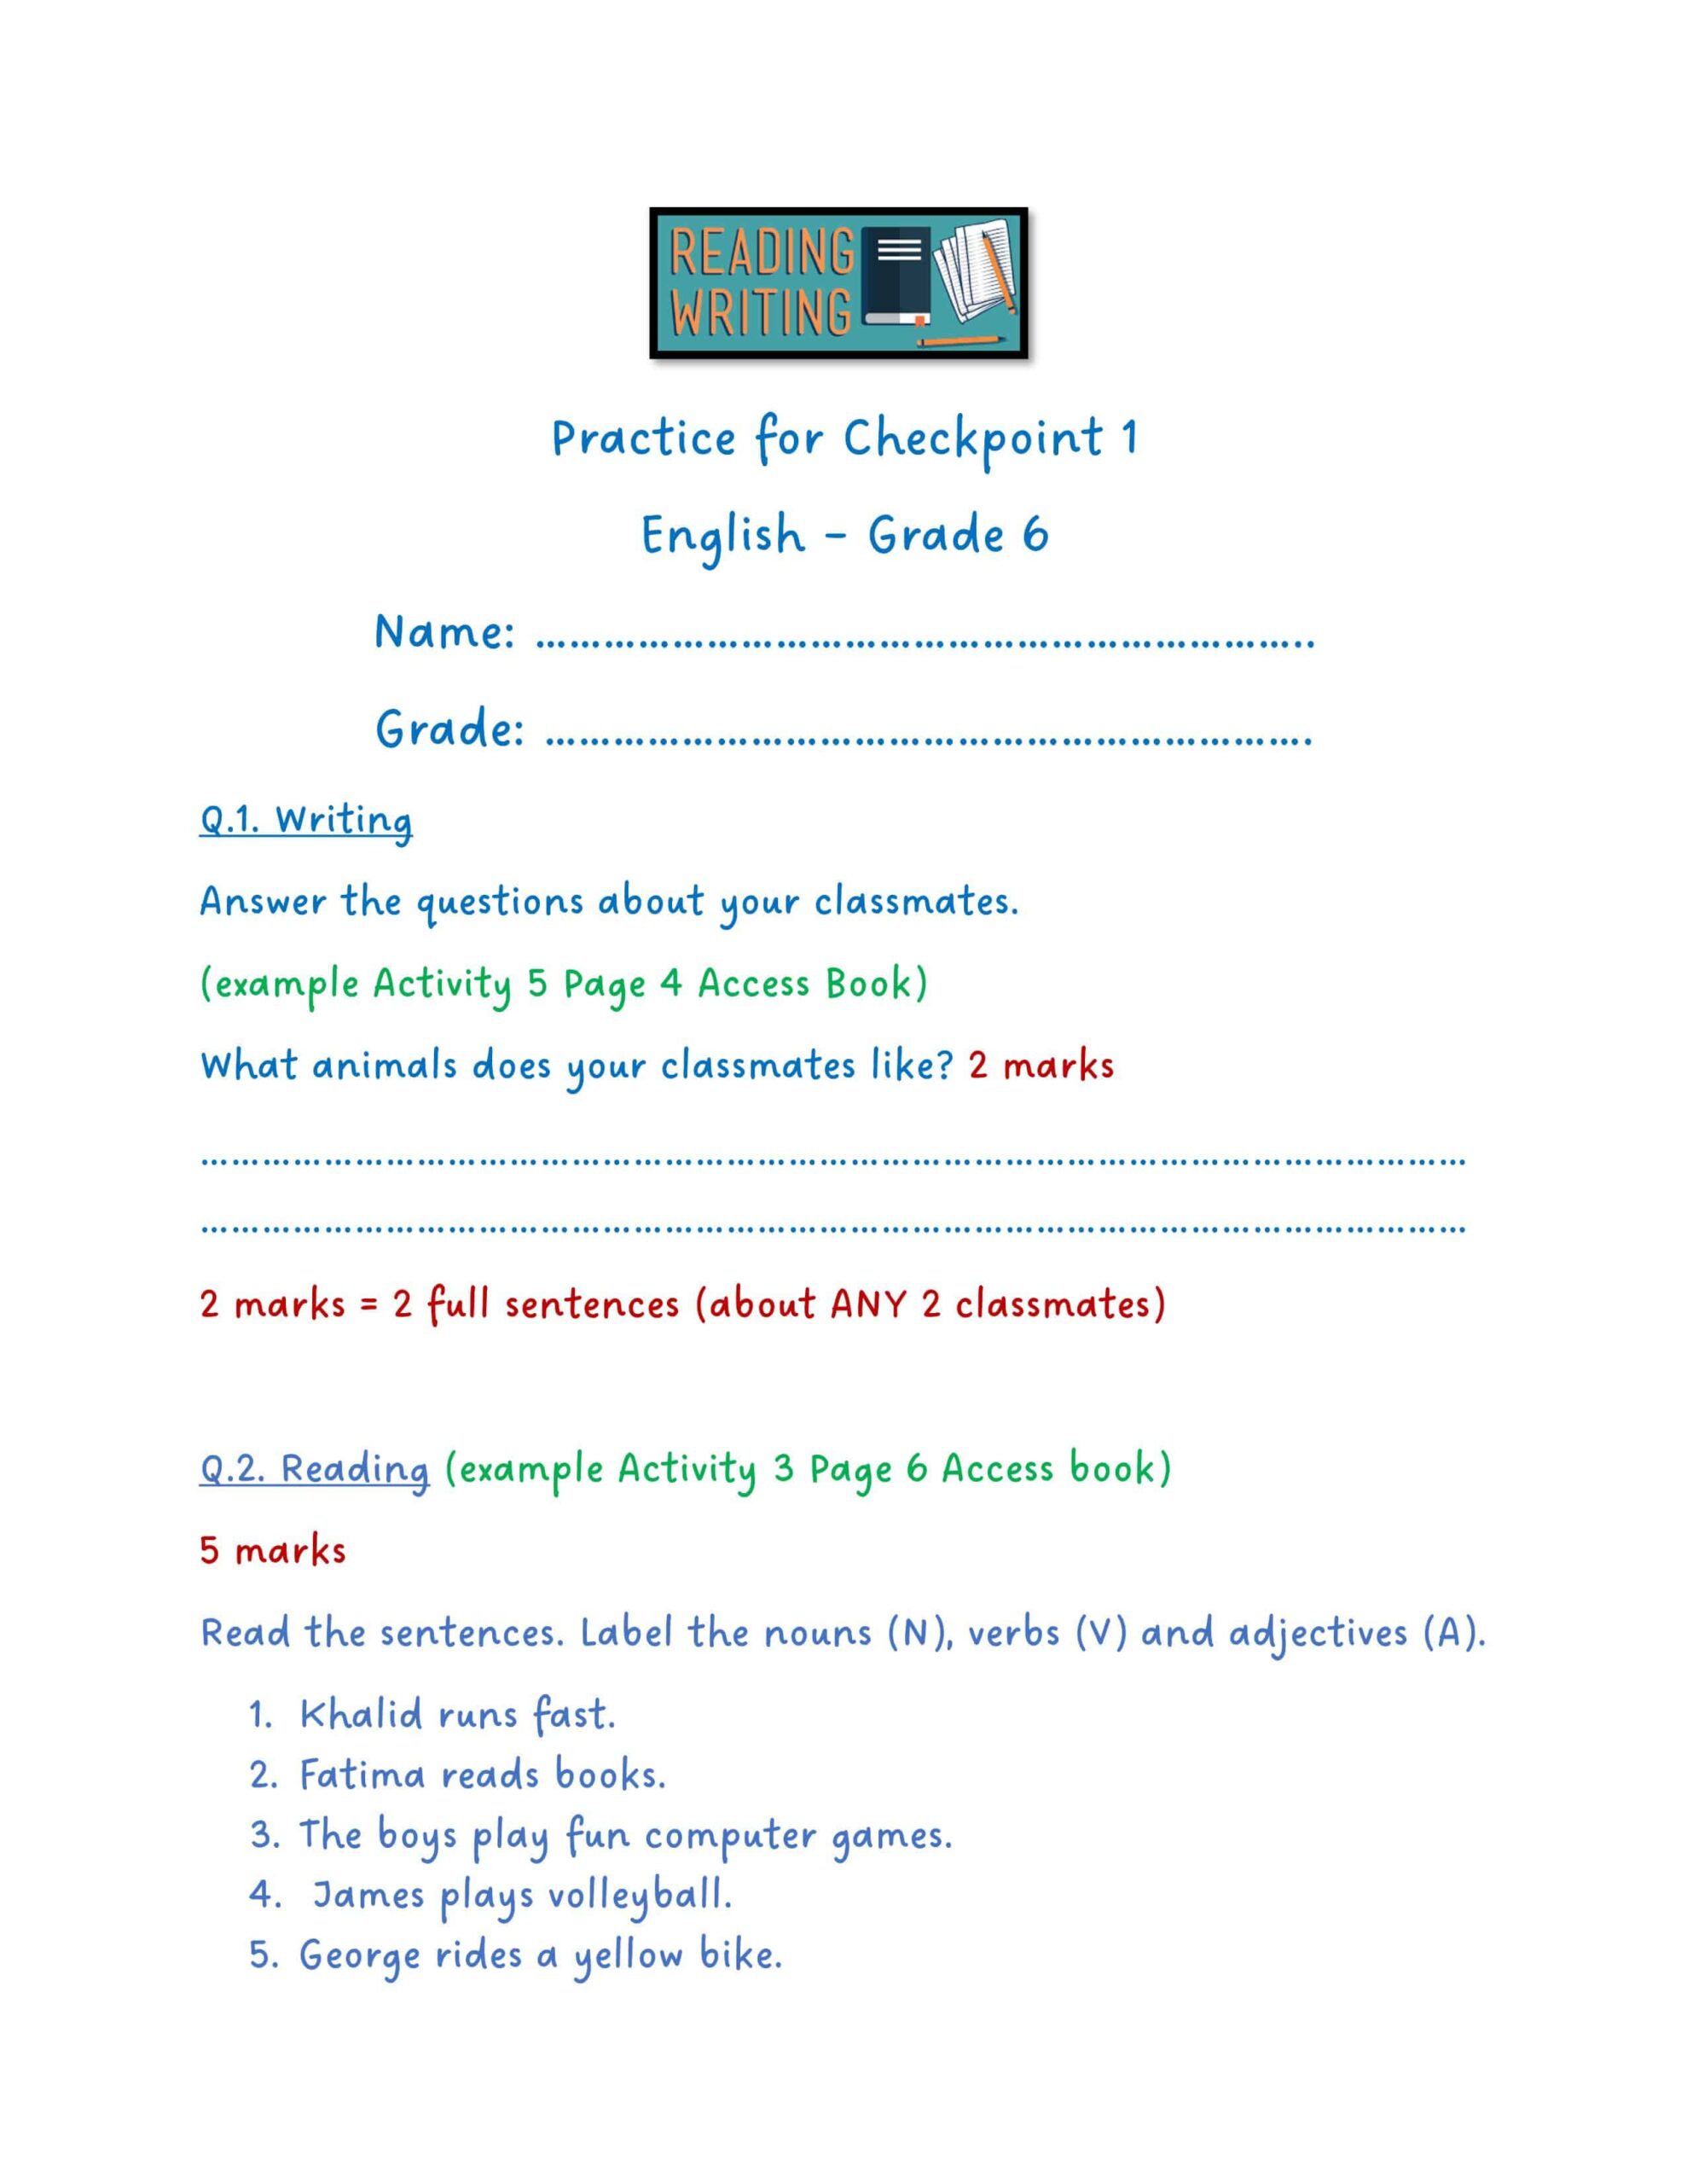 الاختبار التكويني الأول اللغة الإنجليزية الصف السادس